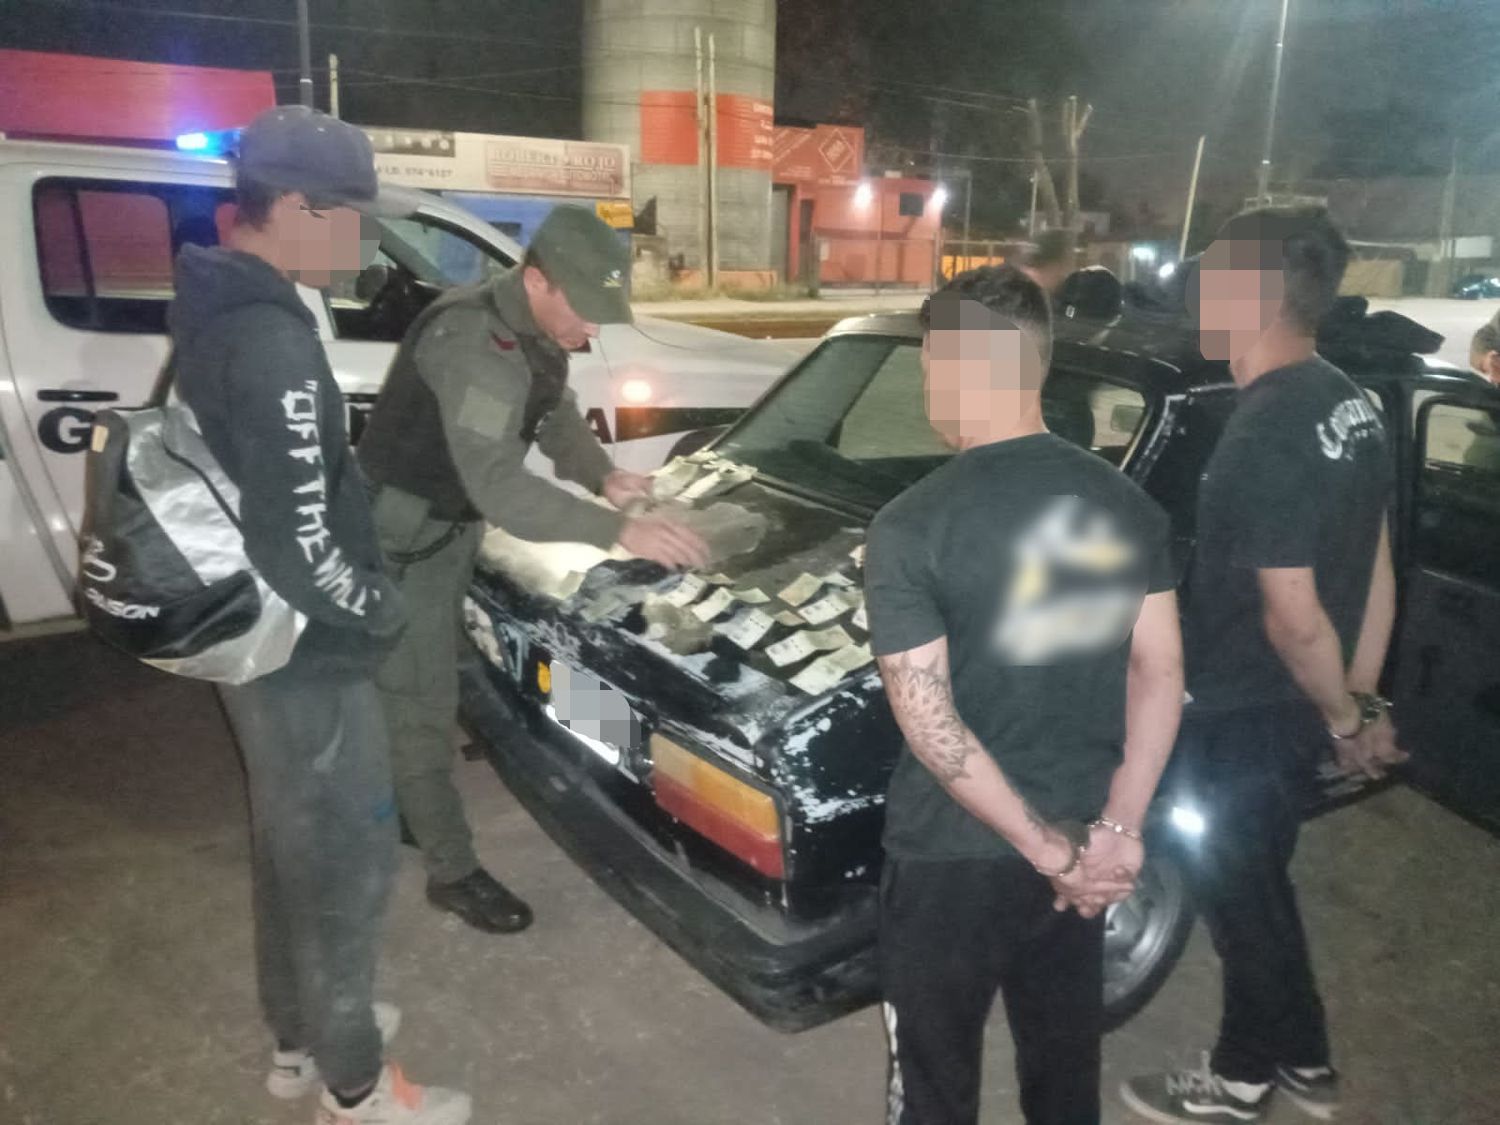 Lomas de Zamora: Viajaban con cocaína a bordo de un vehículo